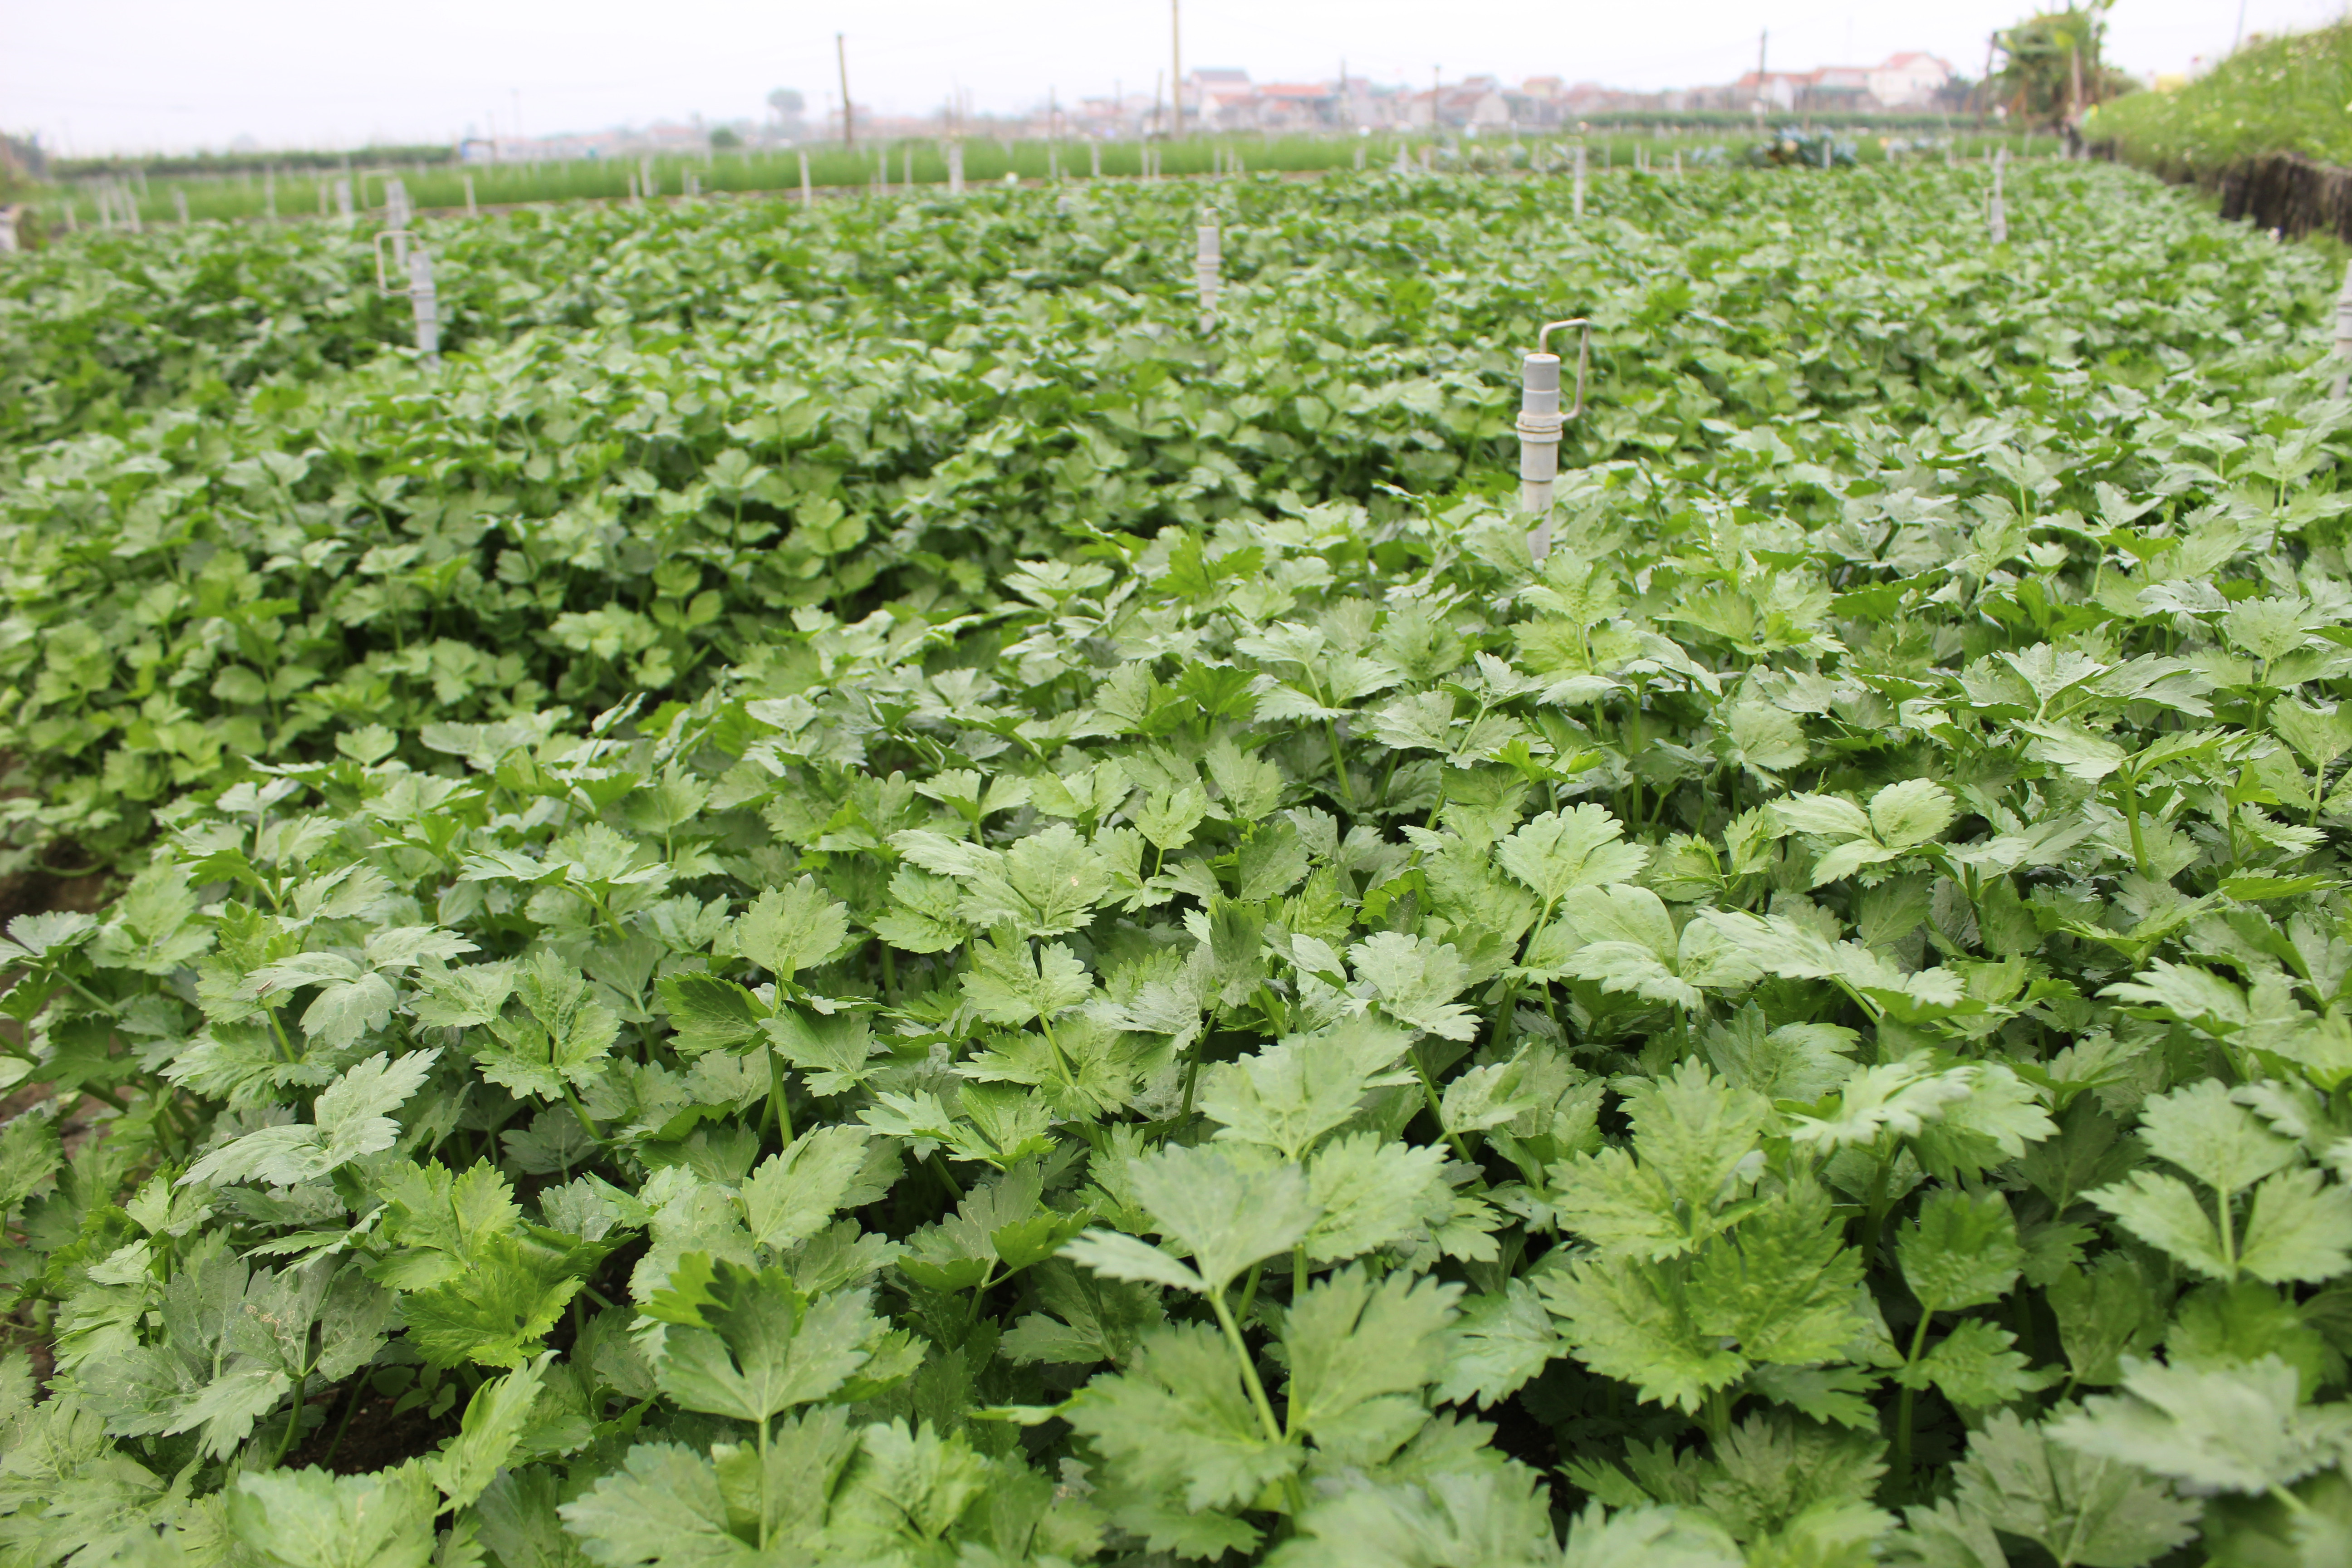 Toàn xã Quỳnh Lương hiện có 20 ha trồng rau cần tây khô trên đất cát pha thịt. Ảnh: Hồng Diện